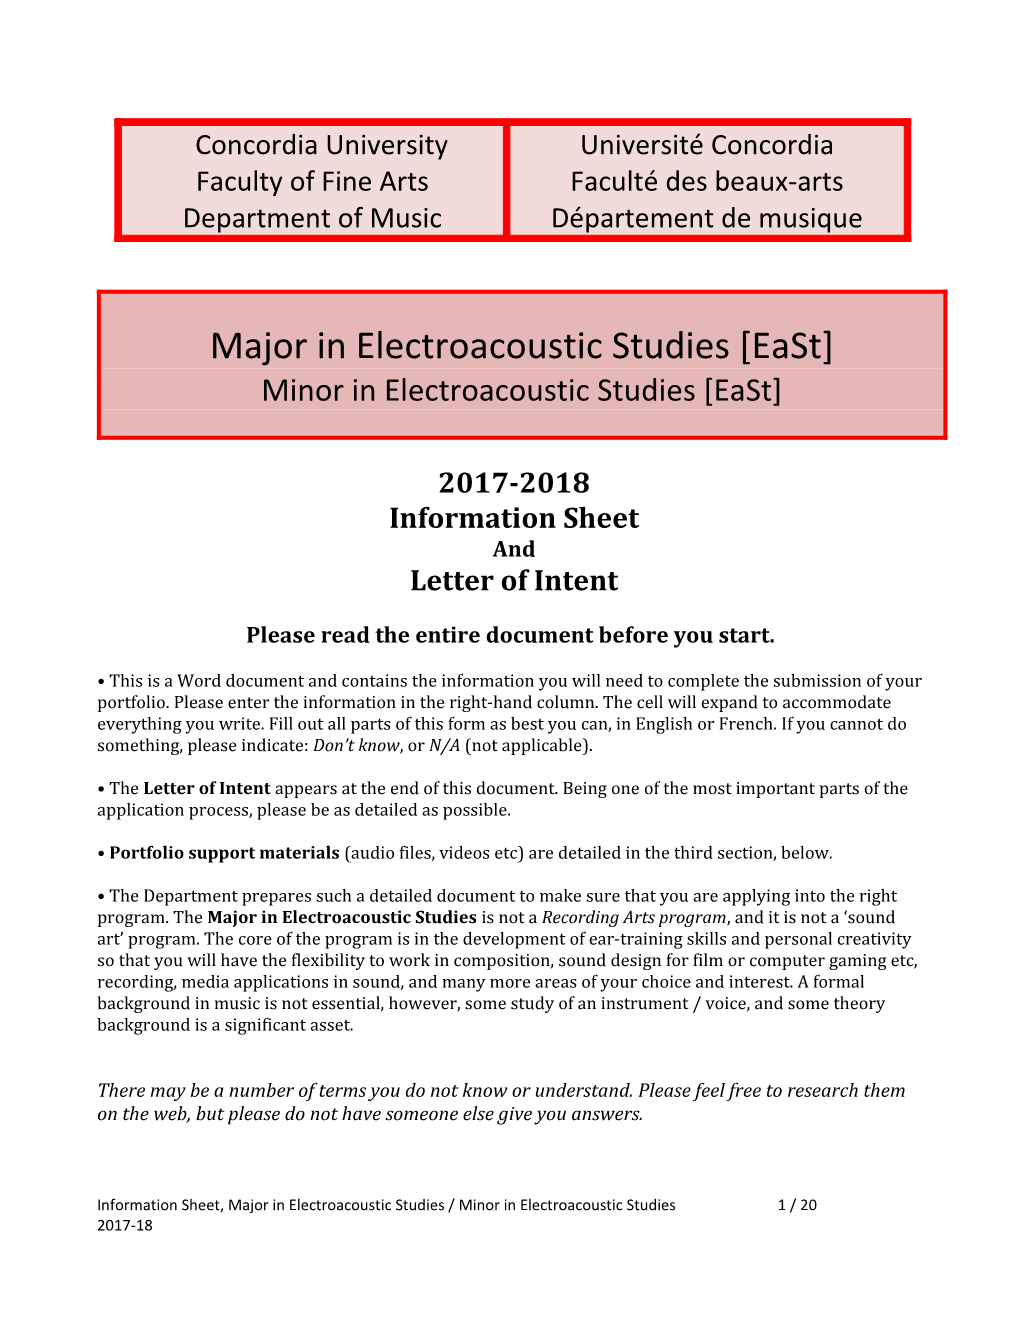 Major in Electroacoustic Studies East